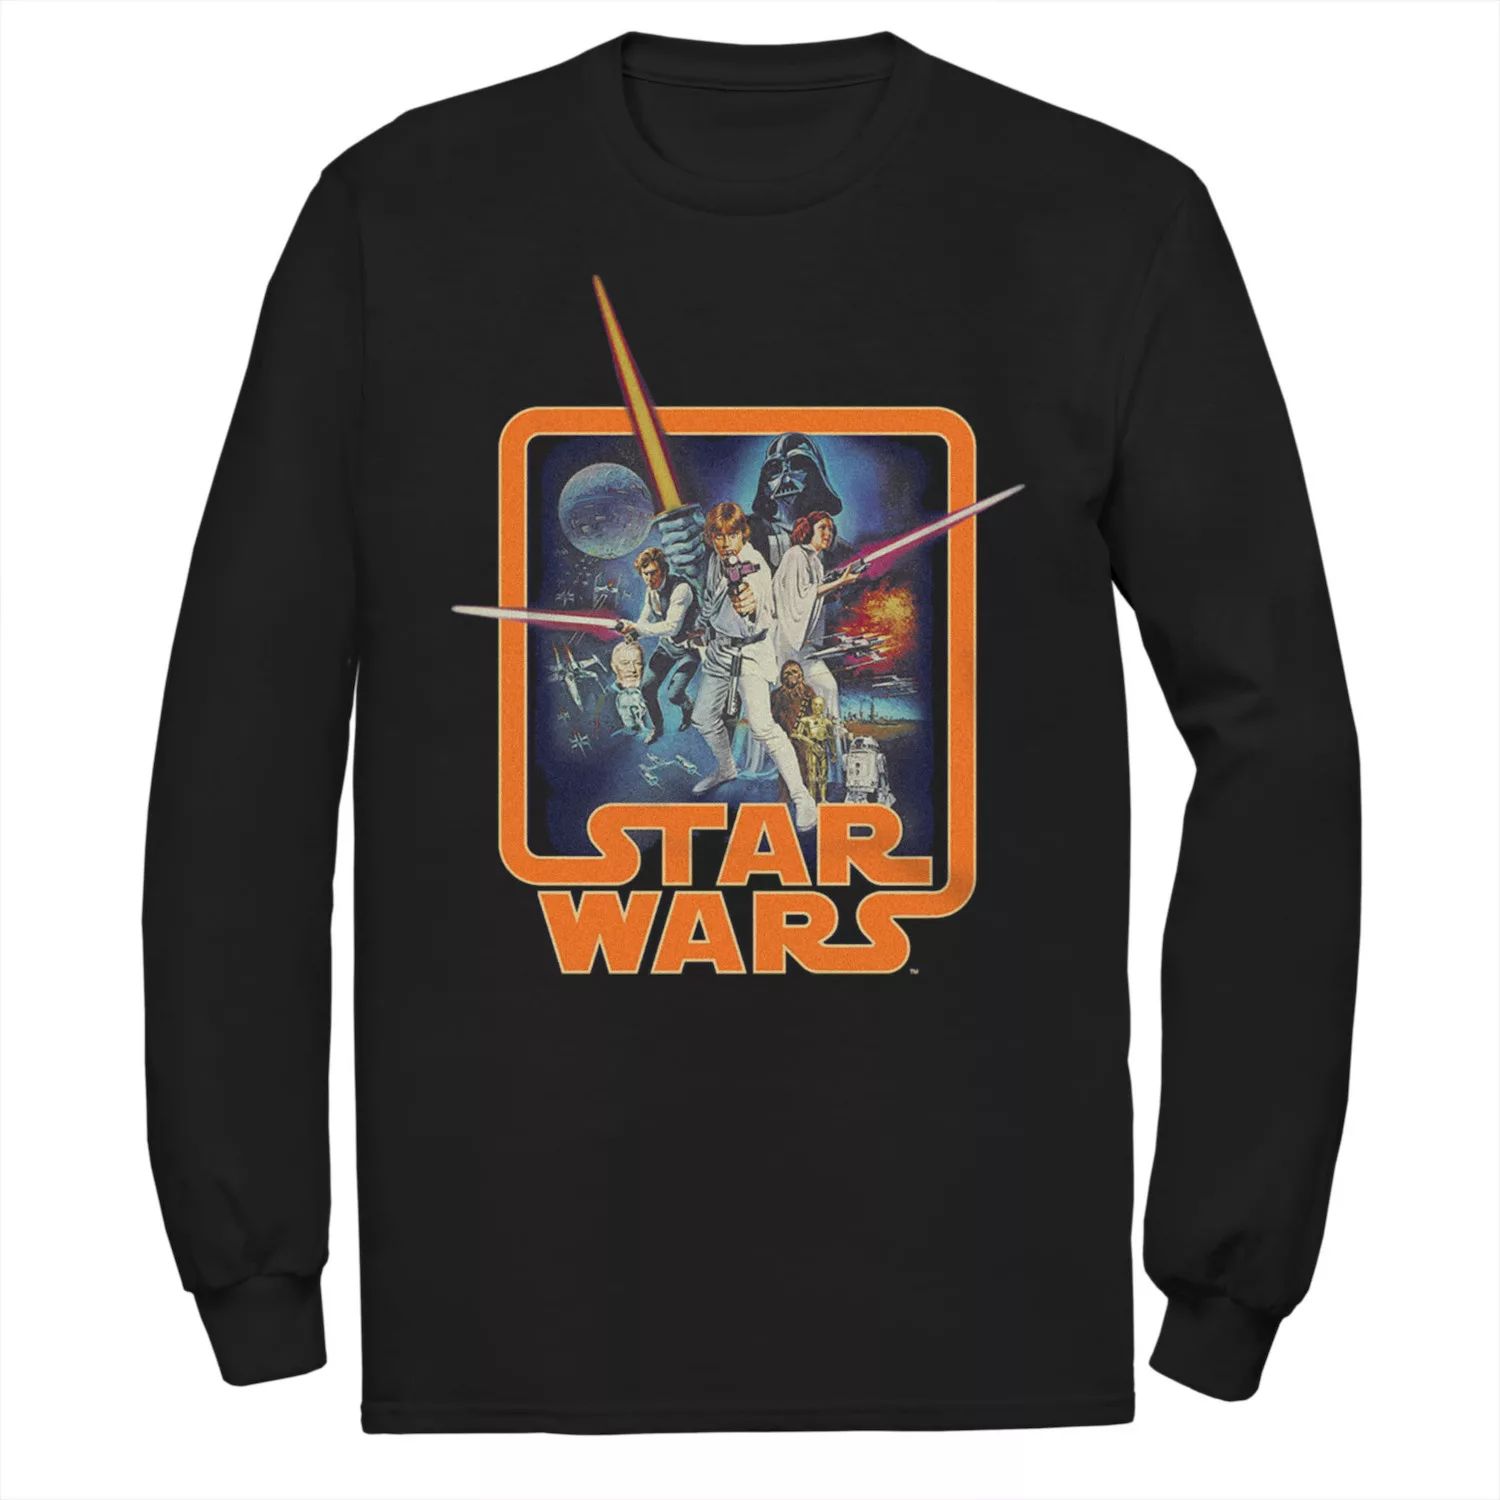 Мужская классическая групповая футболка «Звездные войны» Licensed Character мужская футболка в стиле поп музыки звездные войны мандалорская групповая съемка licensed character